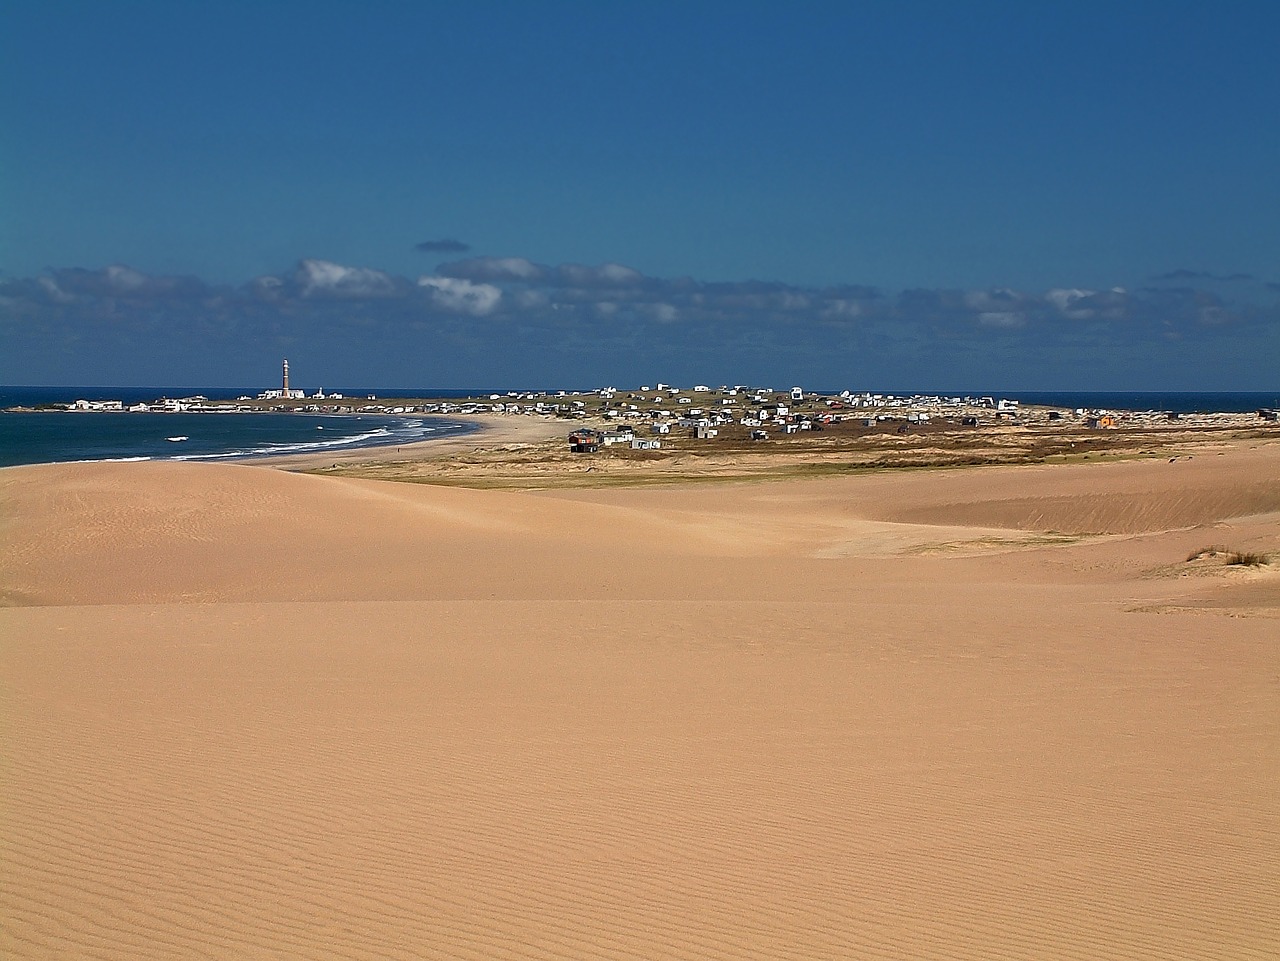 Cabo Polonio - Uruguay